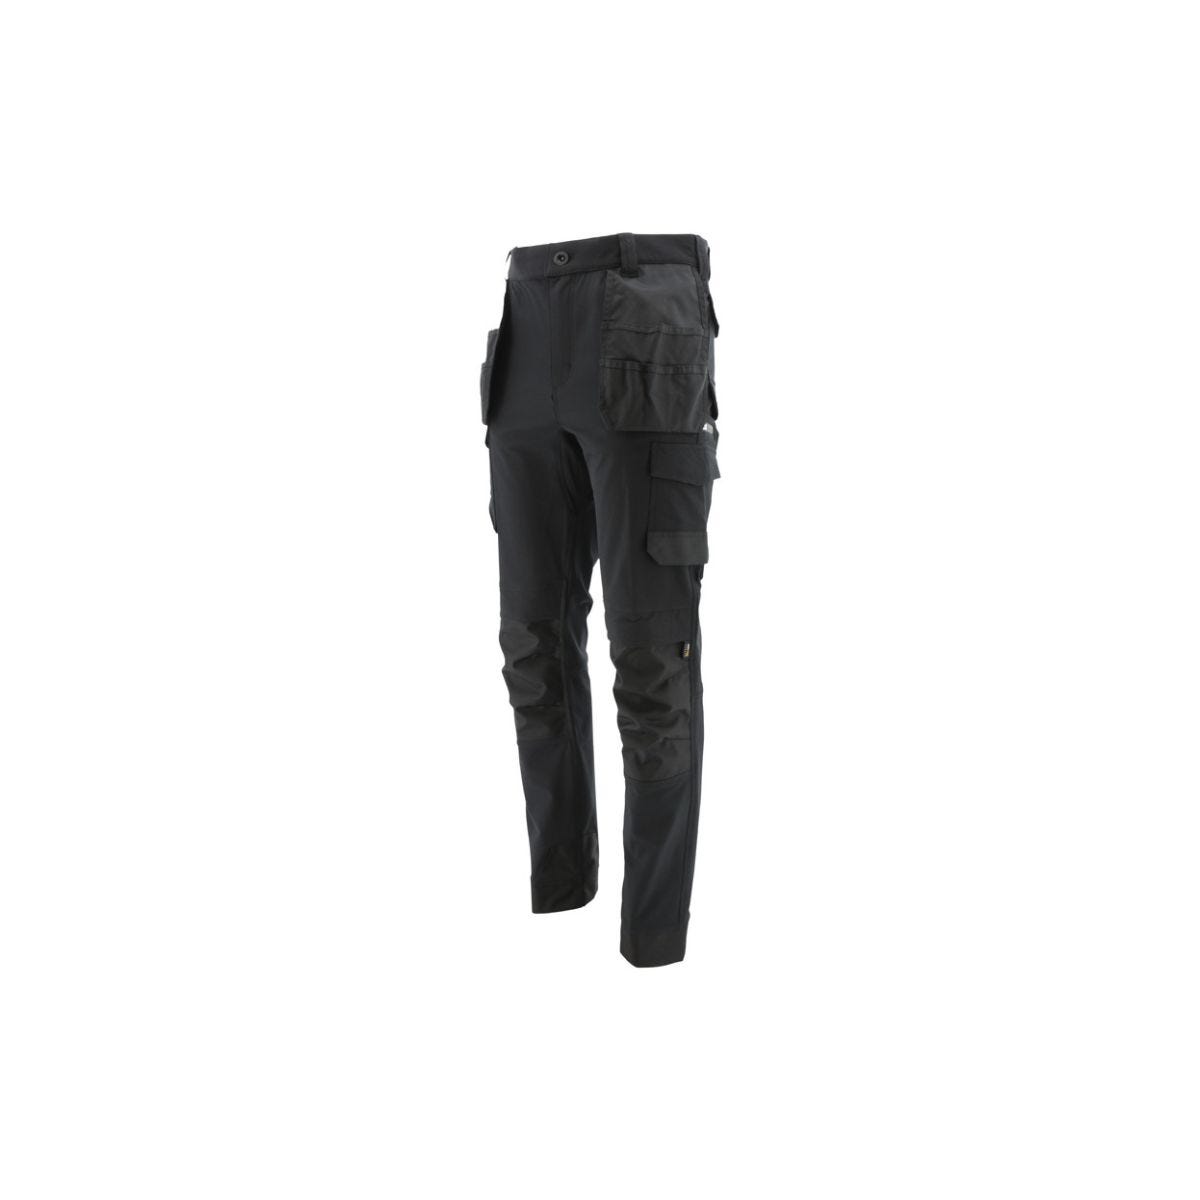 Pantalon de travail stretch technique noir - Caterpillar - Taille 46 0